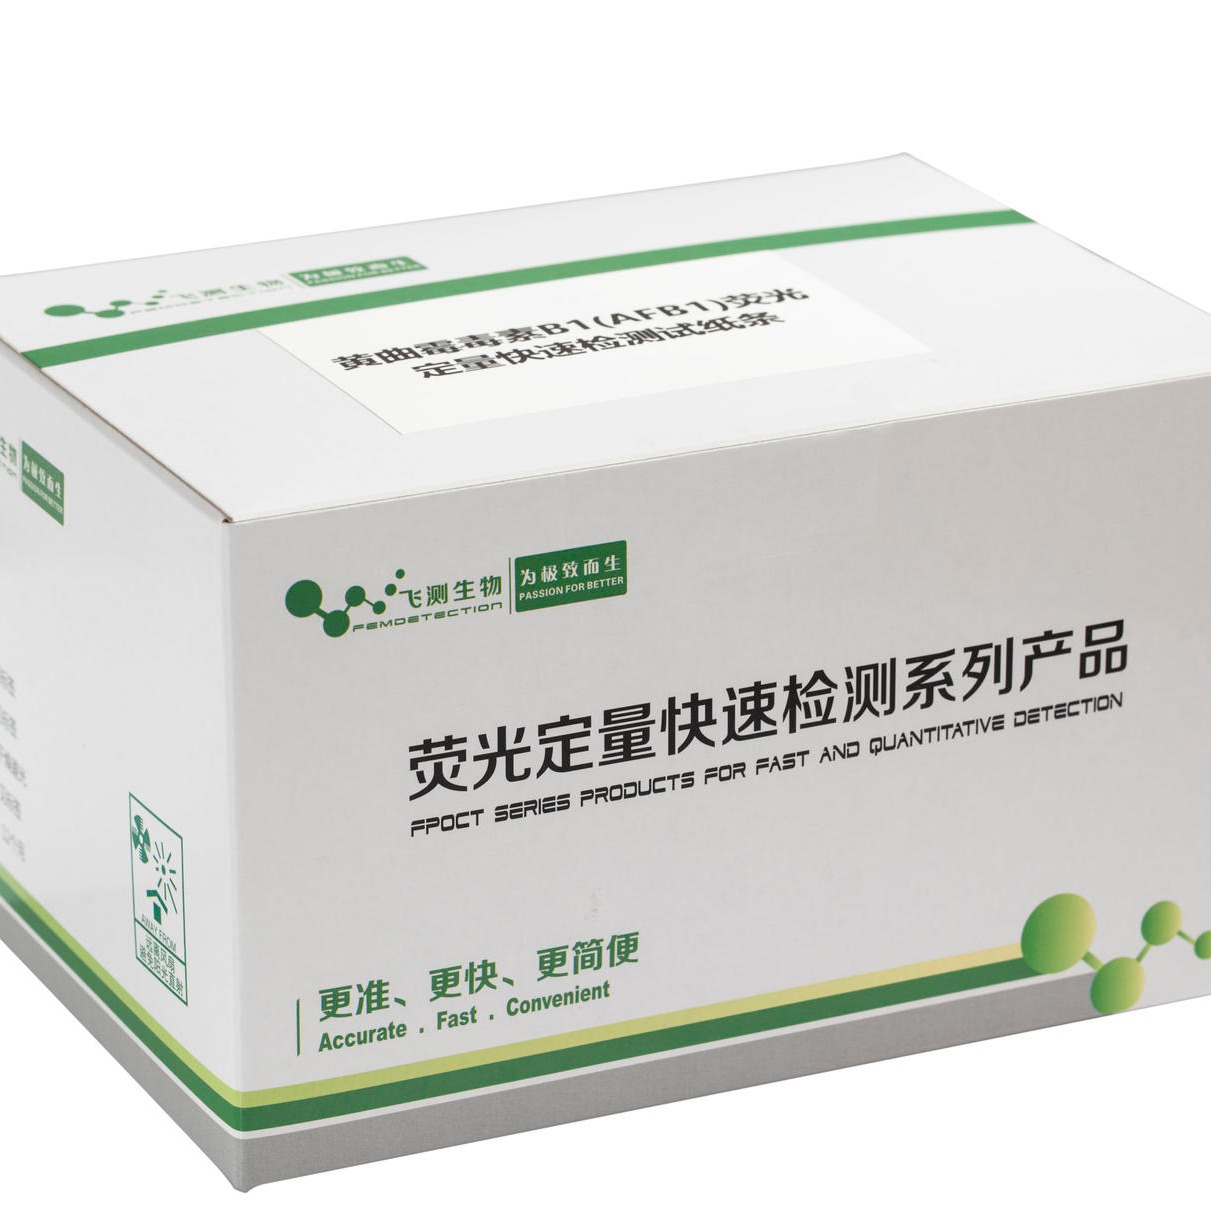 上海飞测FAFB01 黄曲霉毒素B1荧光定量快速检测试纸条 -黄曲霉毒素快速检测试纸条，快速简便准确，饲料专用图片